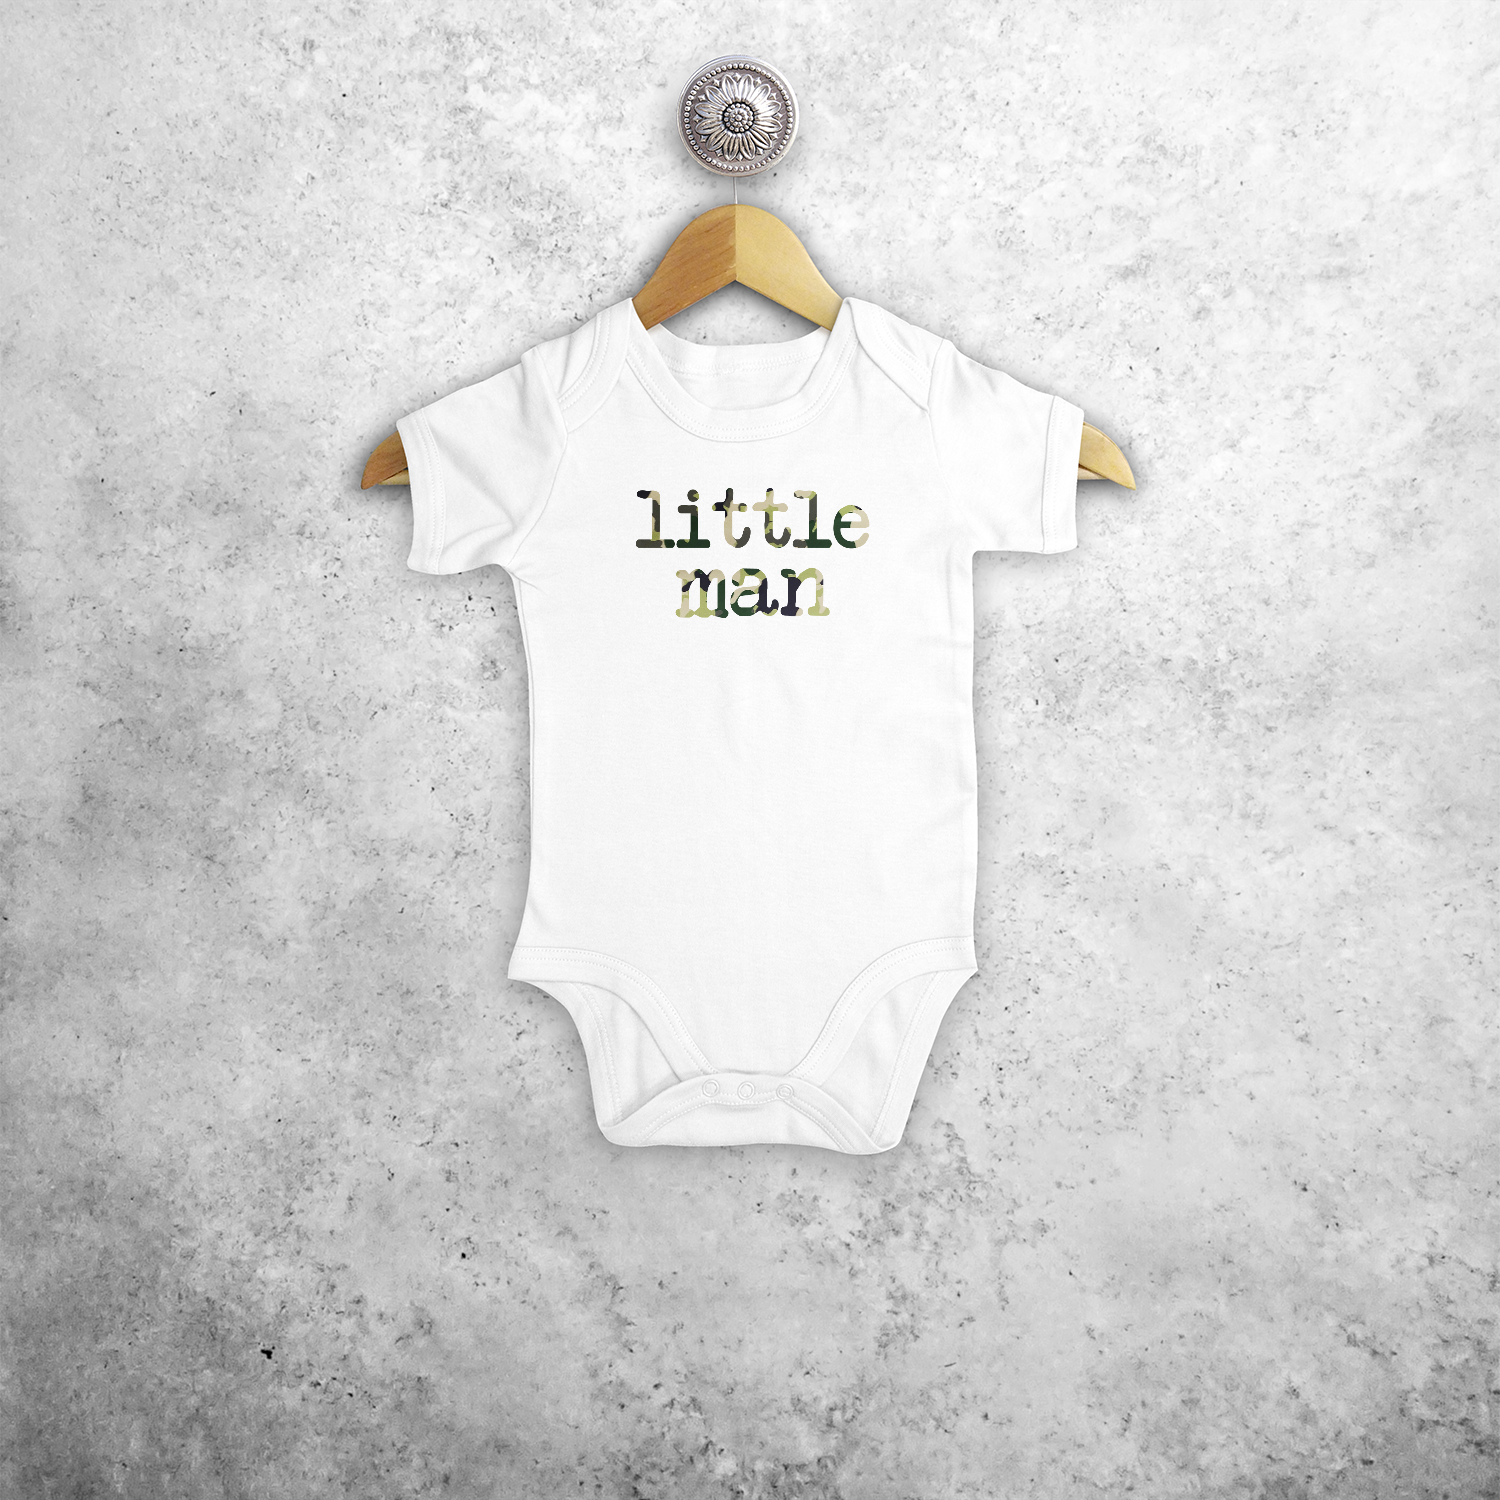 'Little man' baby kruippakje met korte mouwen